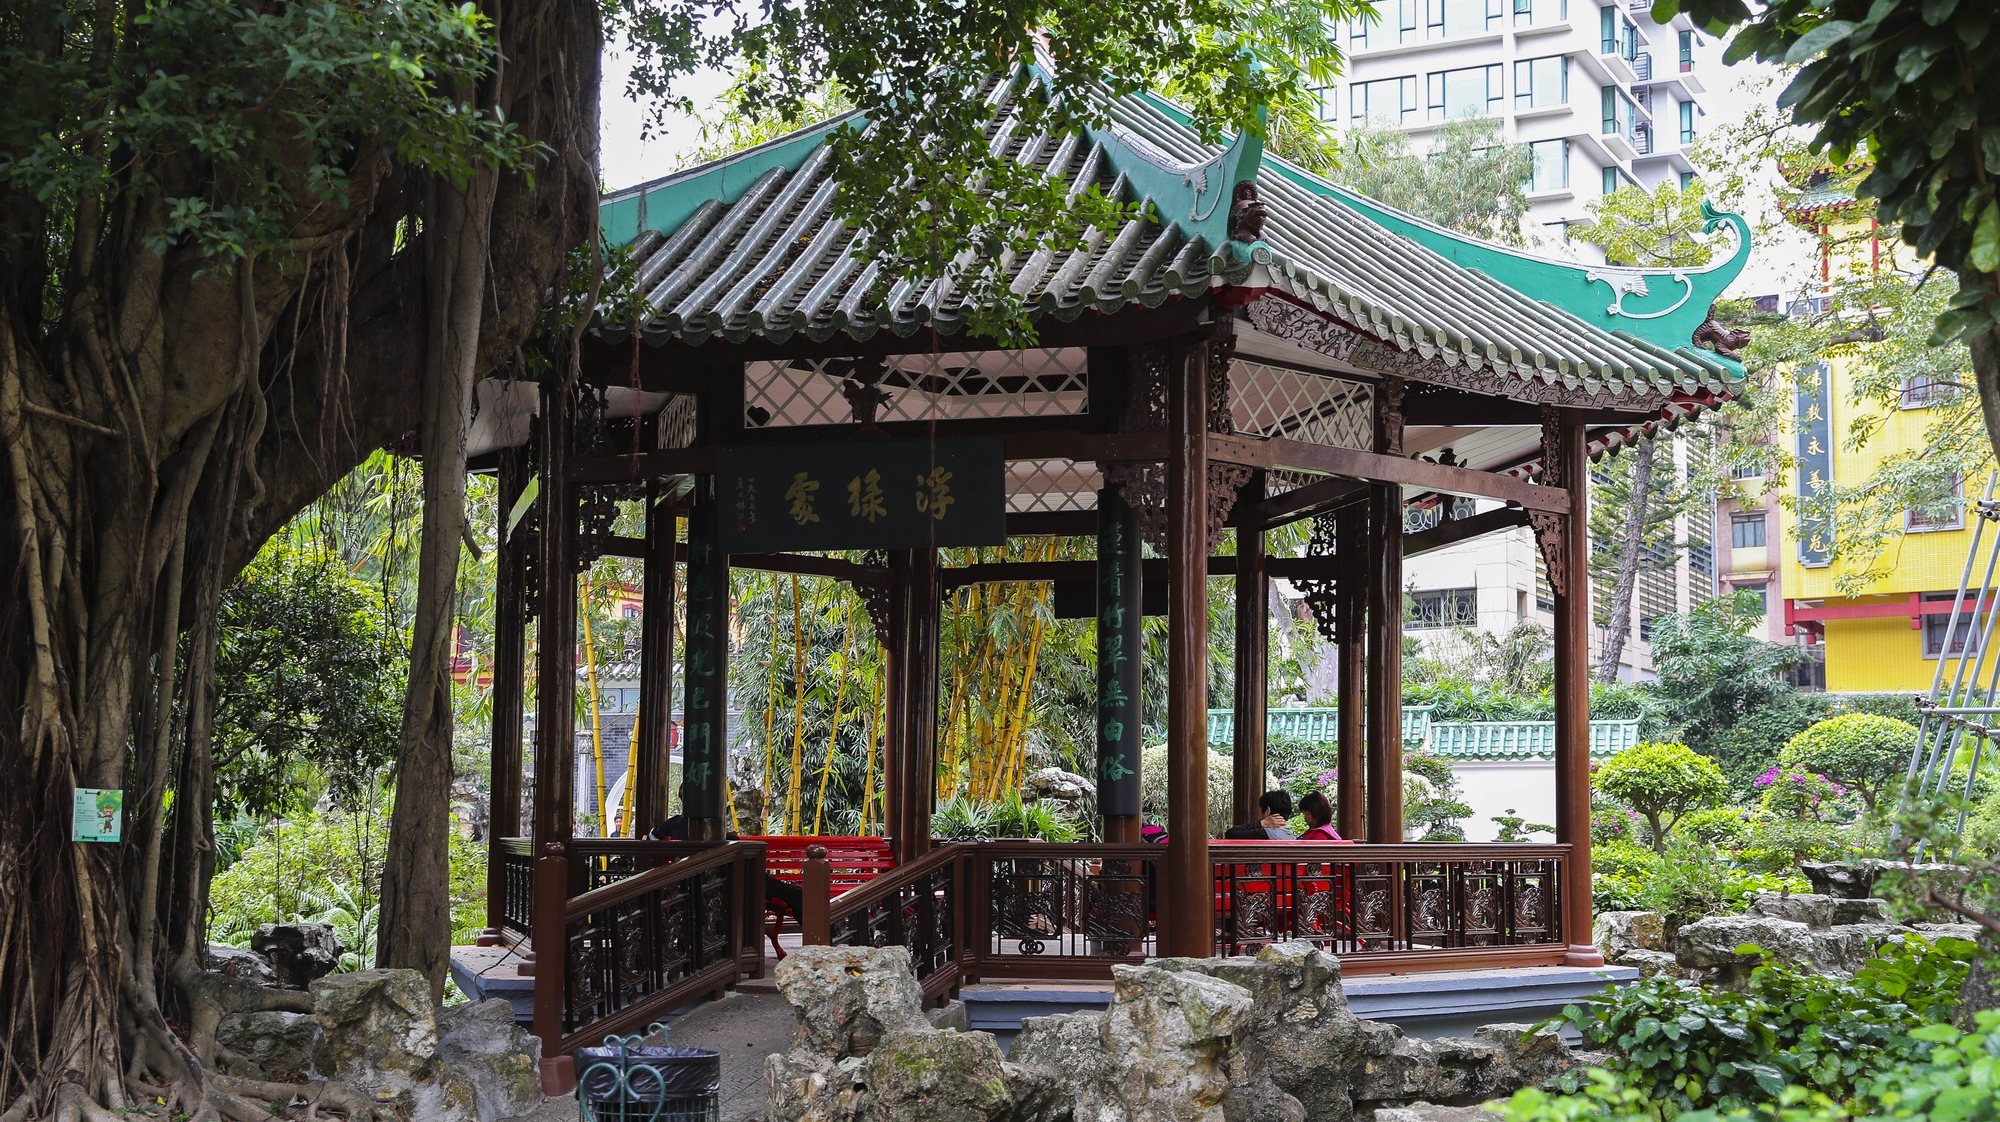 Jardim Lou Lim Loc em Macau, China.17 de dezembro de 2019. JOÃO RELVAS/LUSA